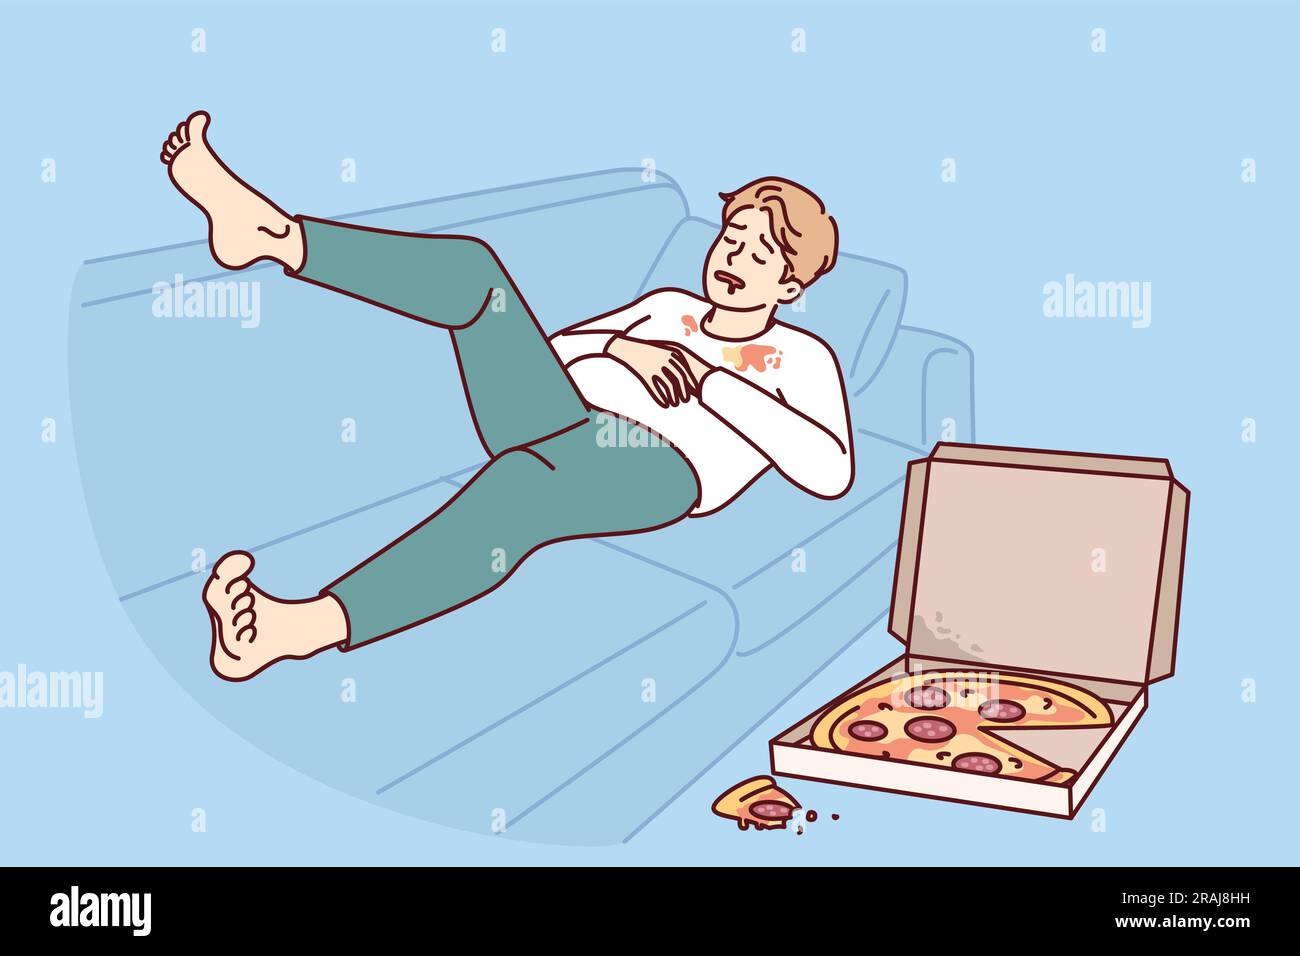 Hässlicher, fetter Mann, der auf dem Sofa neben einer Pizzaschachtel schläft, für ein falsches Lebensstil-Konzept von Fettleibigkeit verursacht. Der Kerl, der an dem Problem der Fettleibigkeit leidet, braucht Hilfe von Ernährungswissenschaftlern und Essen gesunde Ernährung. Stock Vektor